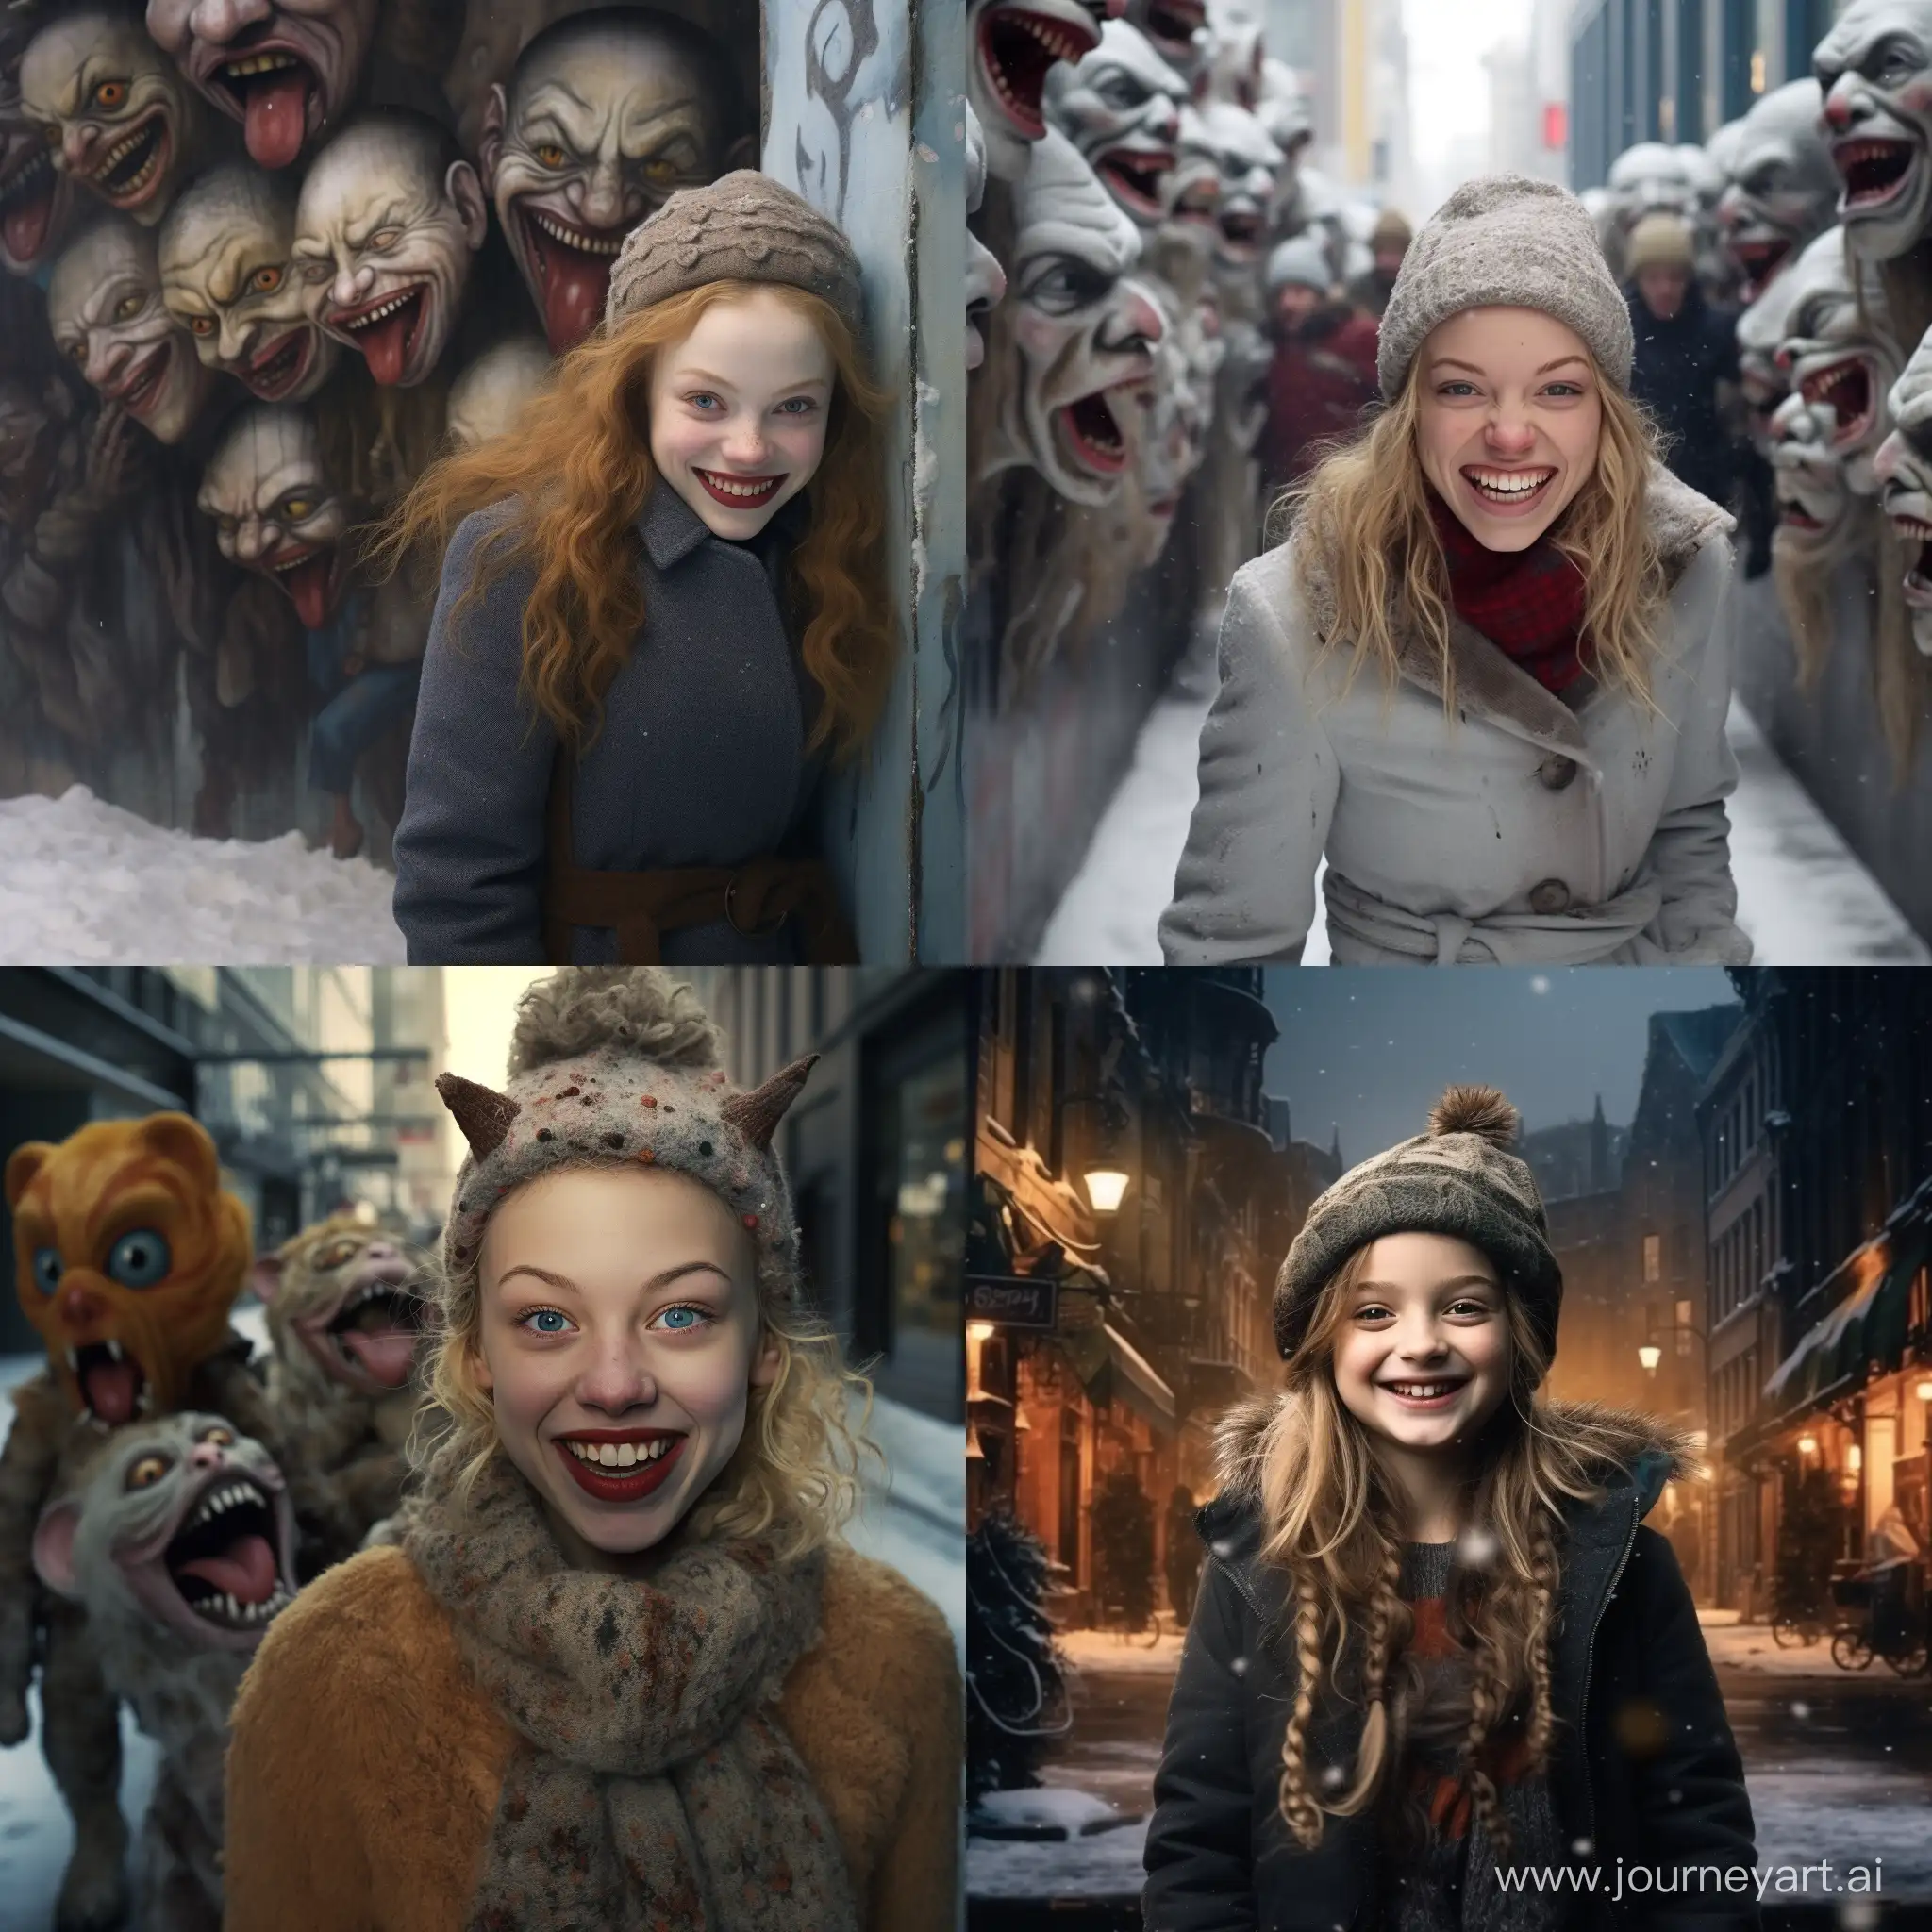 Счастливая улыбающаяся девушка гордо идёт по зимнему городу, а позади неё плетутся страхи и тревоги в виде злобных уродливых карликов, которых девушка перестала бояться, фотография, гиперреализм, высокое разрешение